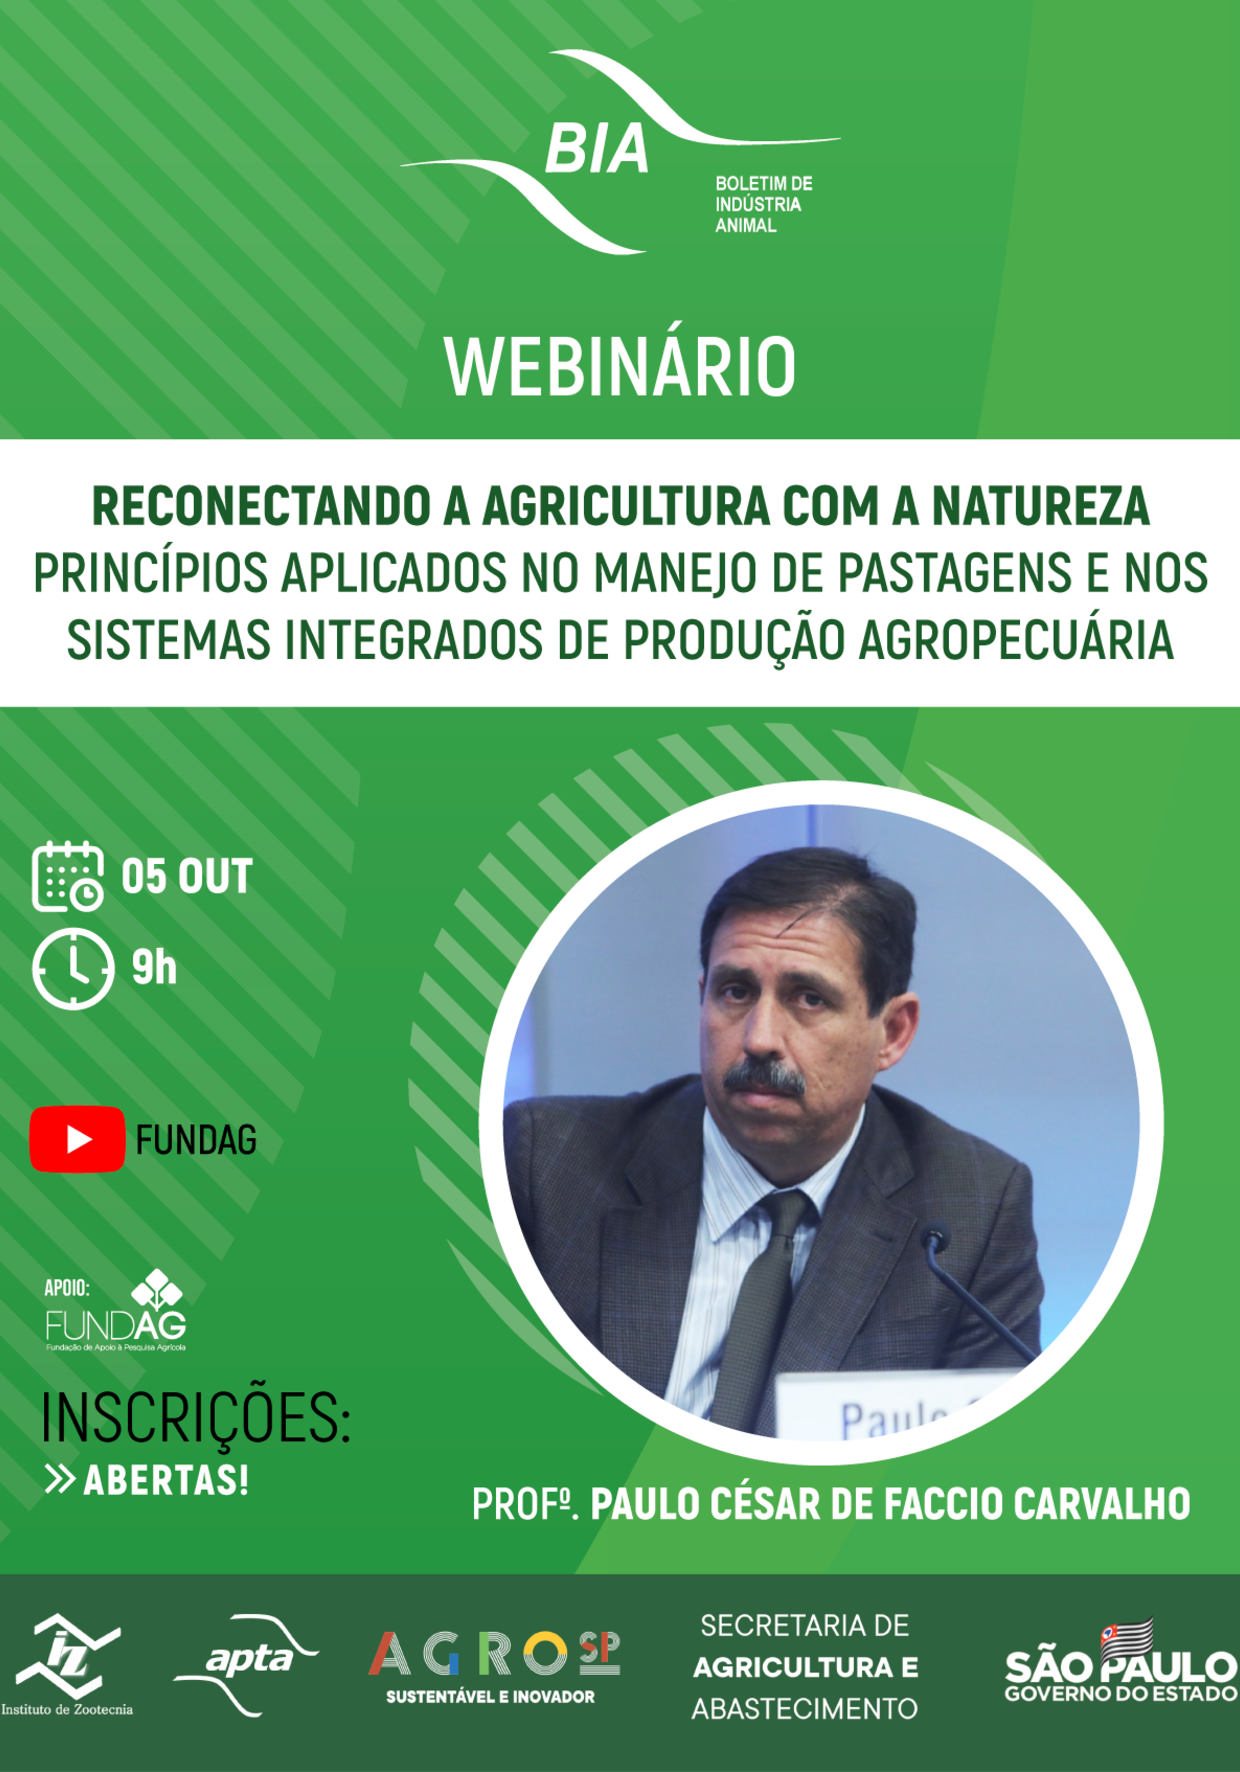 WEBINÁRIO | RECONECTANDO A AGRICULTURA COM A NATUREZA